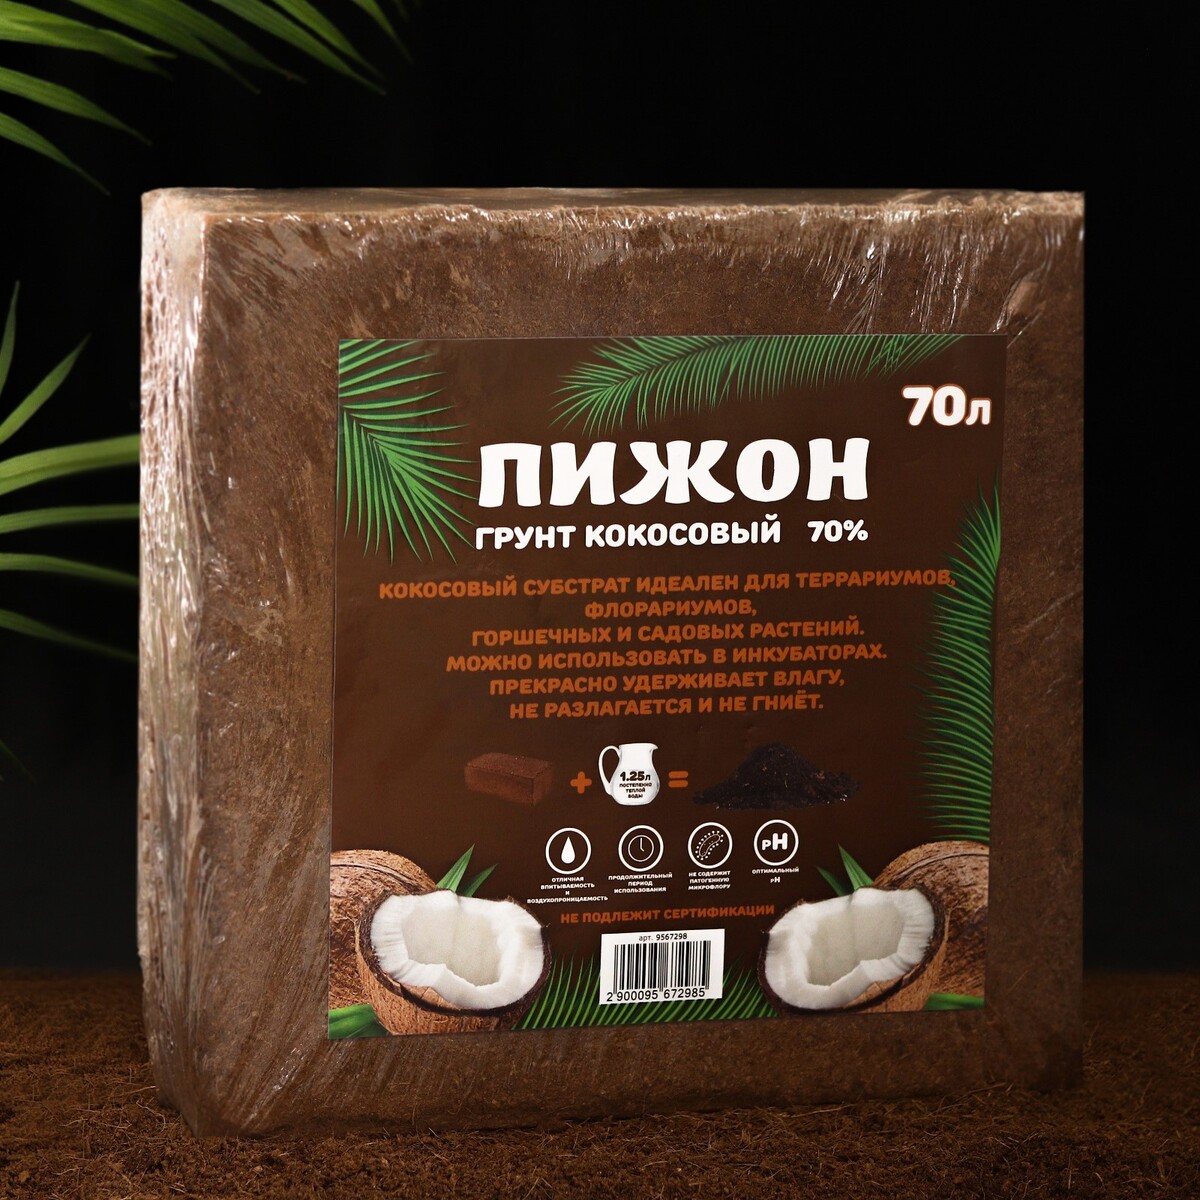 Грунт кокосовый пижон (70%), 70 л, 5 кг Пижон, цвет коричневый 06412342 - фото 2